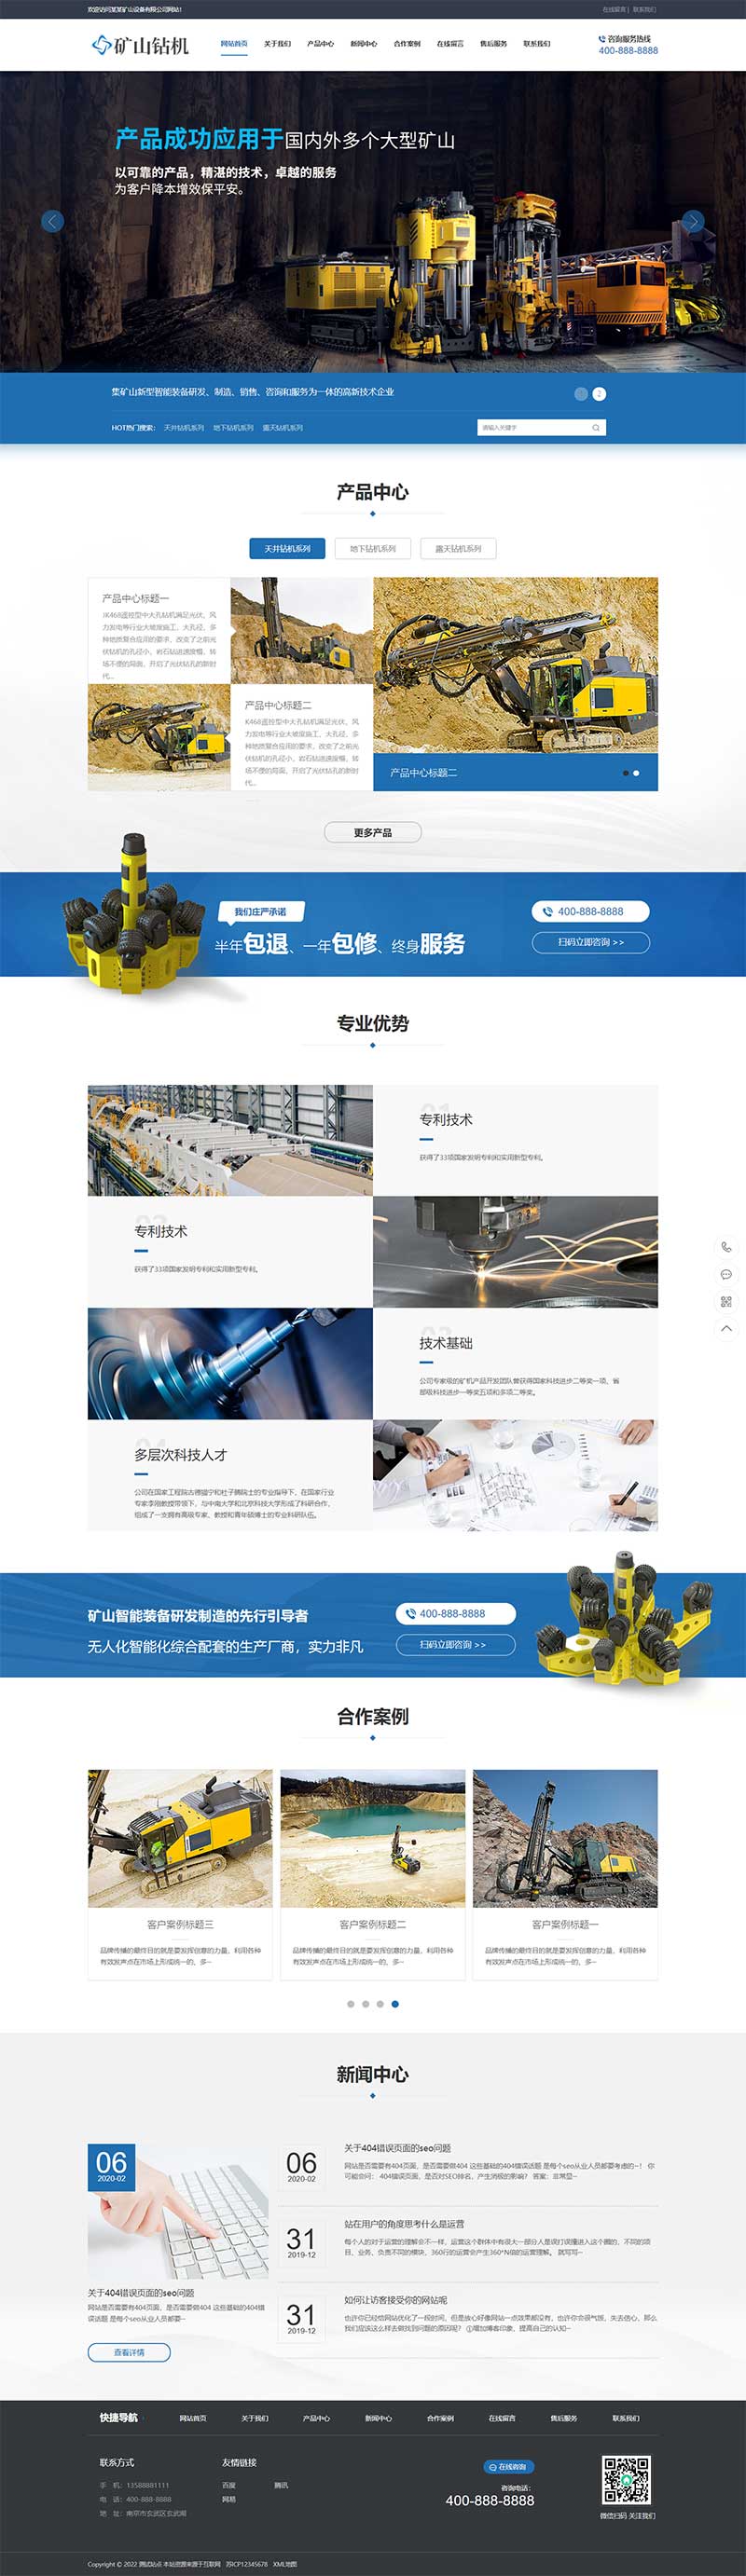 矿山钻机矿业设备网站模板 蓝色营销型矿业机械设备网站模板下载